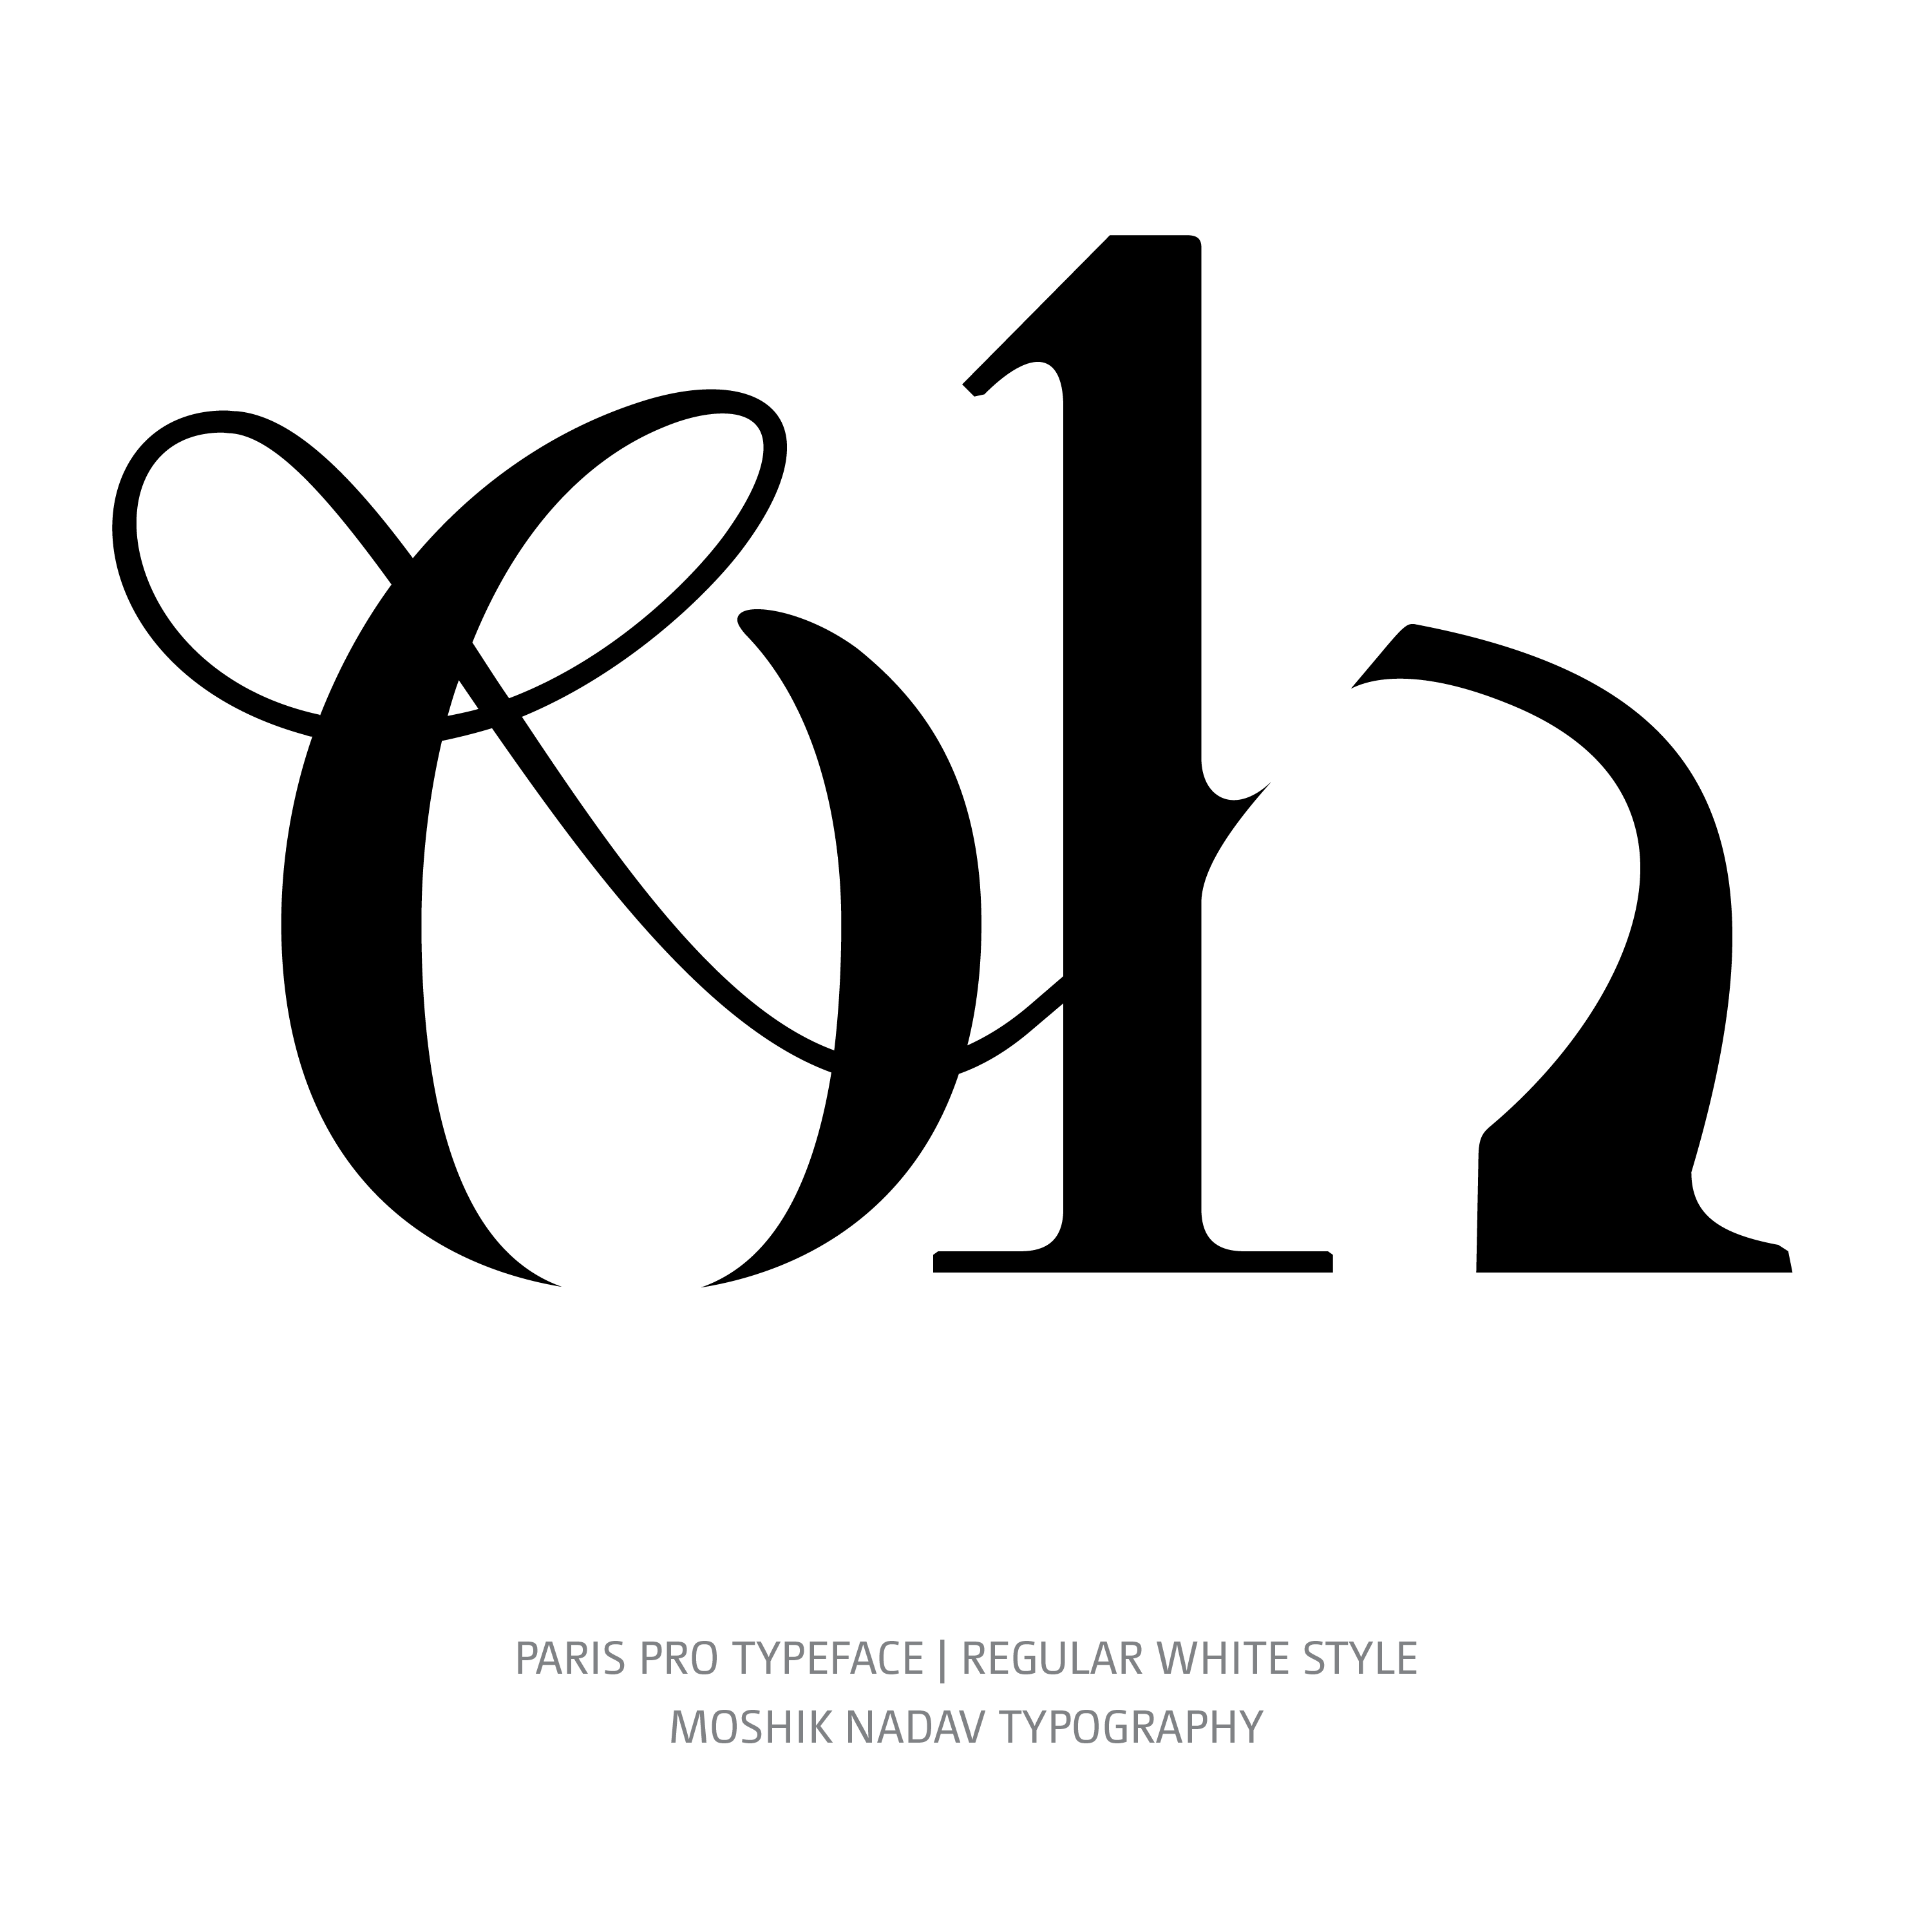 Paris Pro Typeface Regular White oh ligature